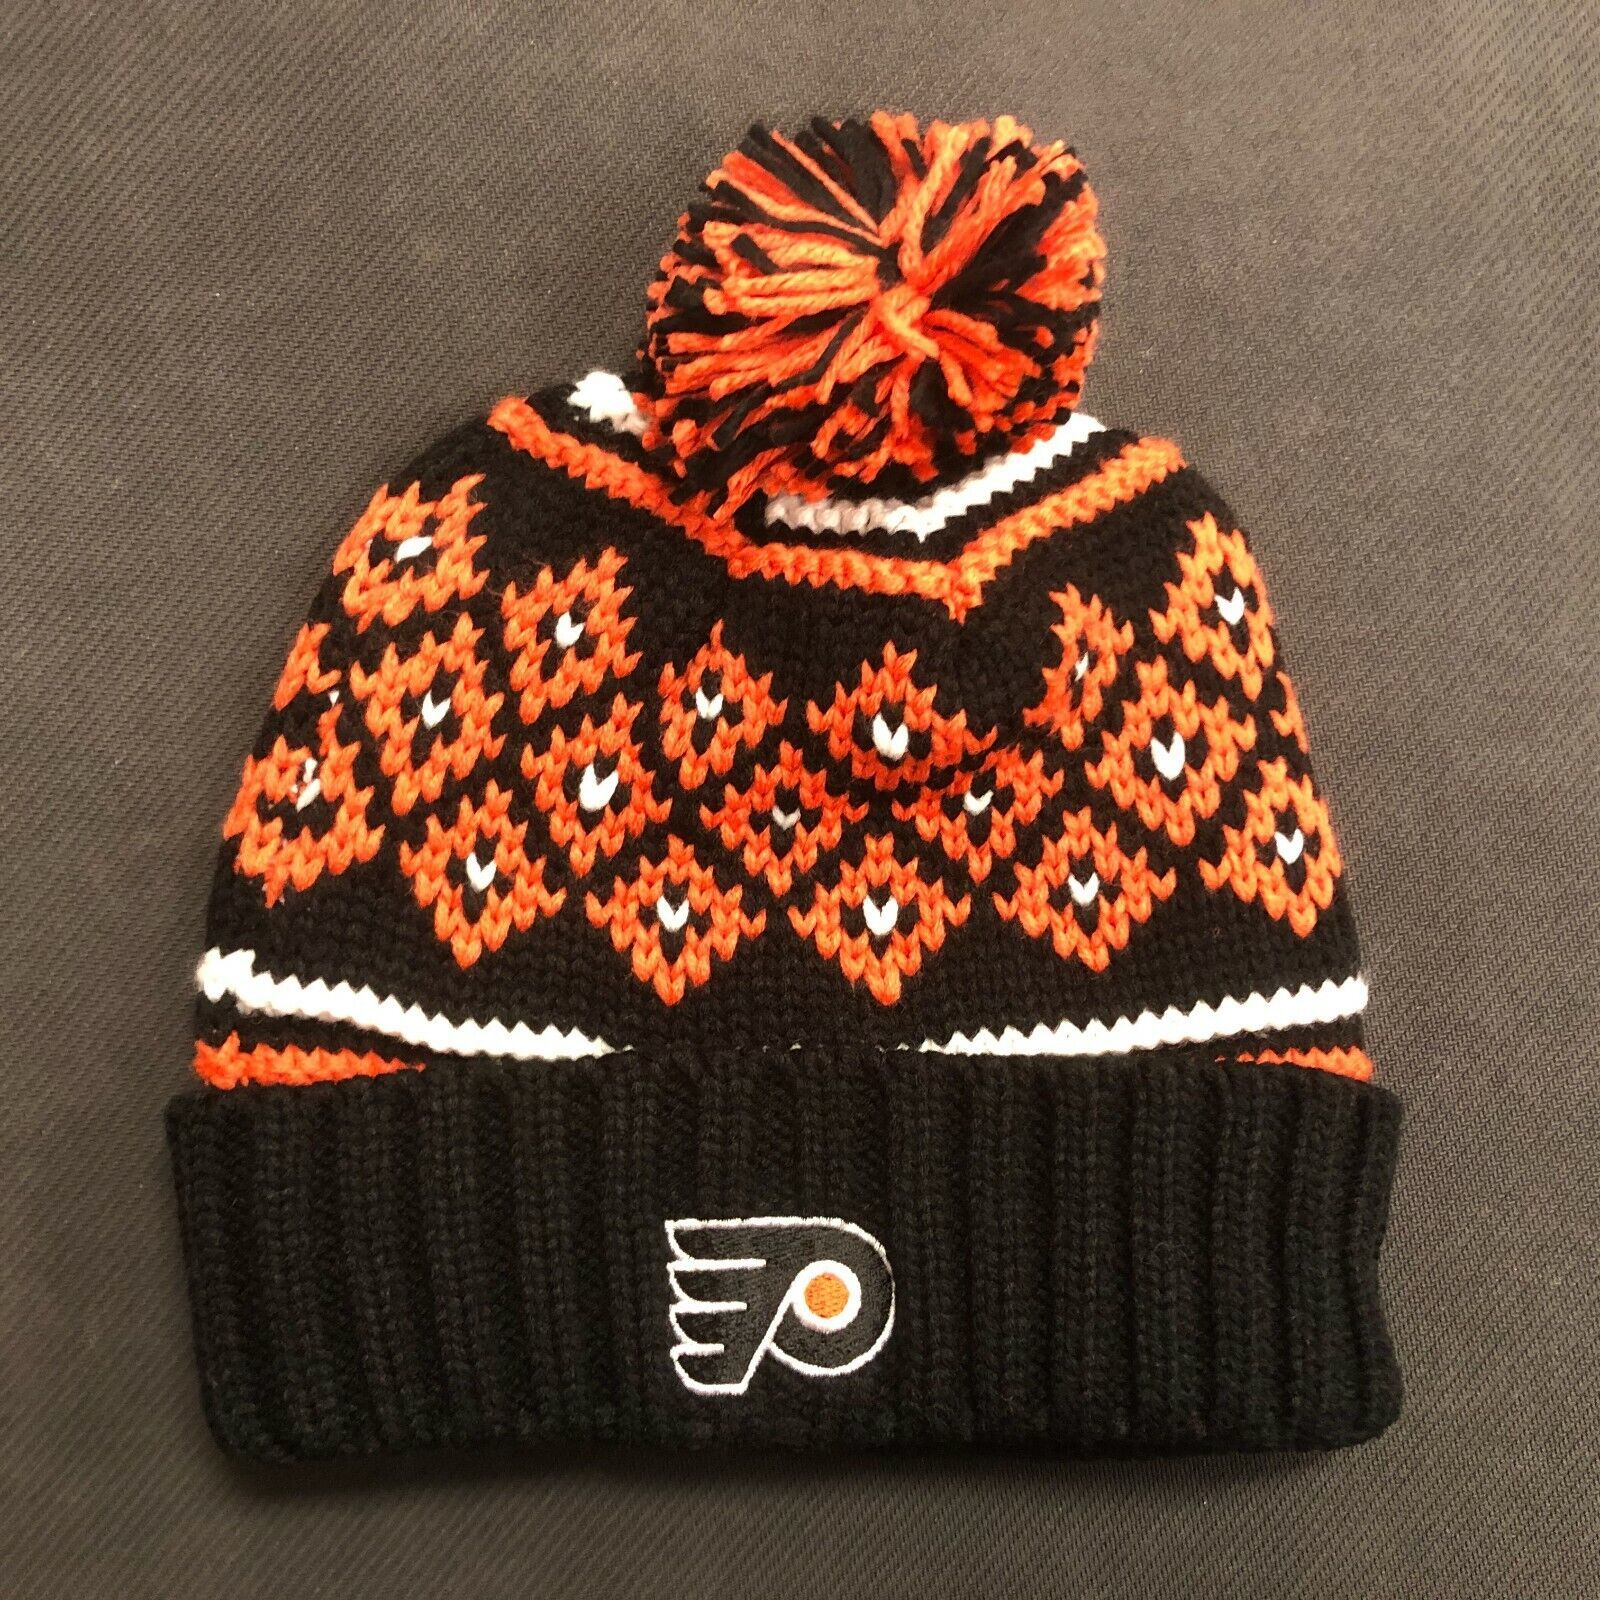 Philadelphia Flyers NHL Hockey Pom Pom Knit Beanie Hat Cap One Size Fits All